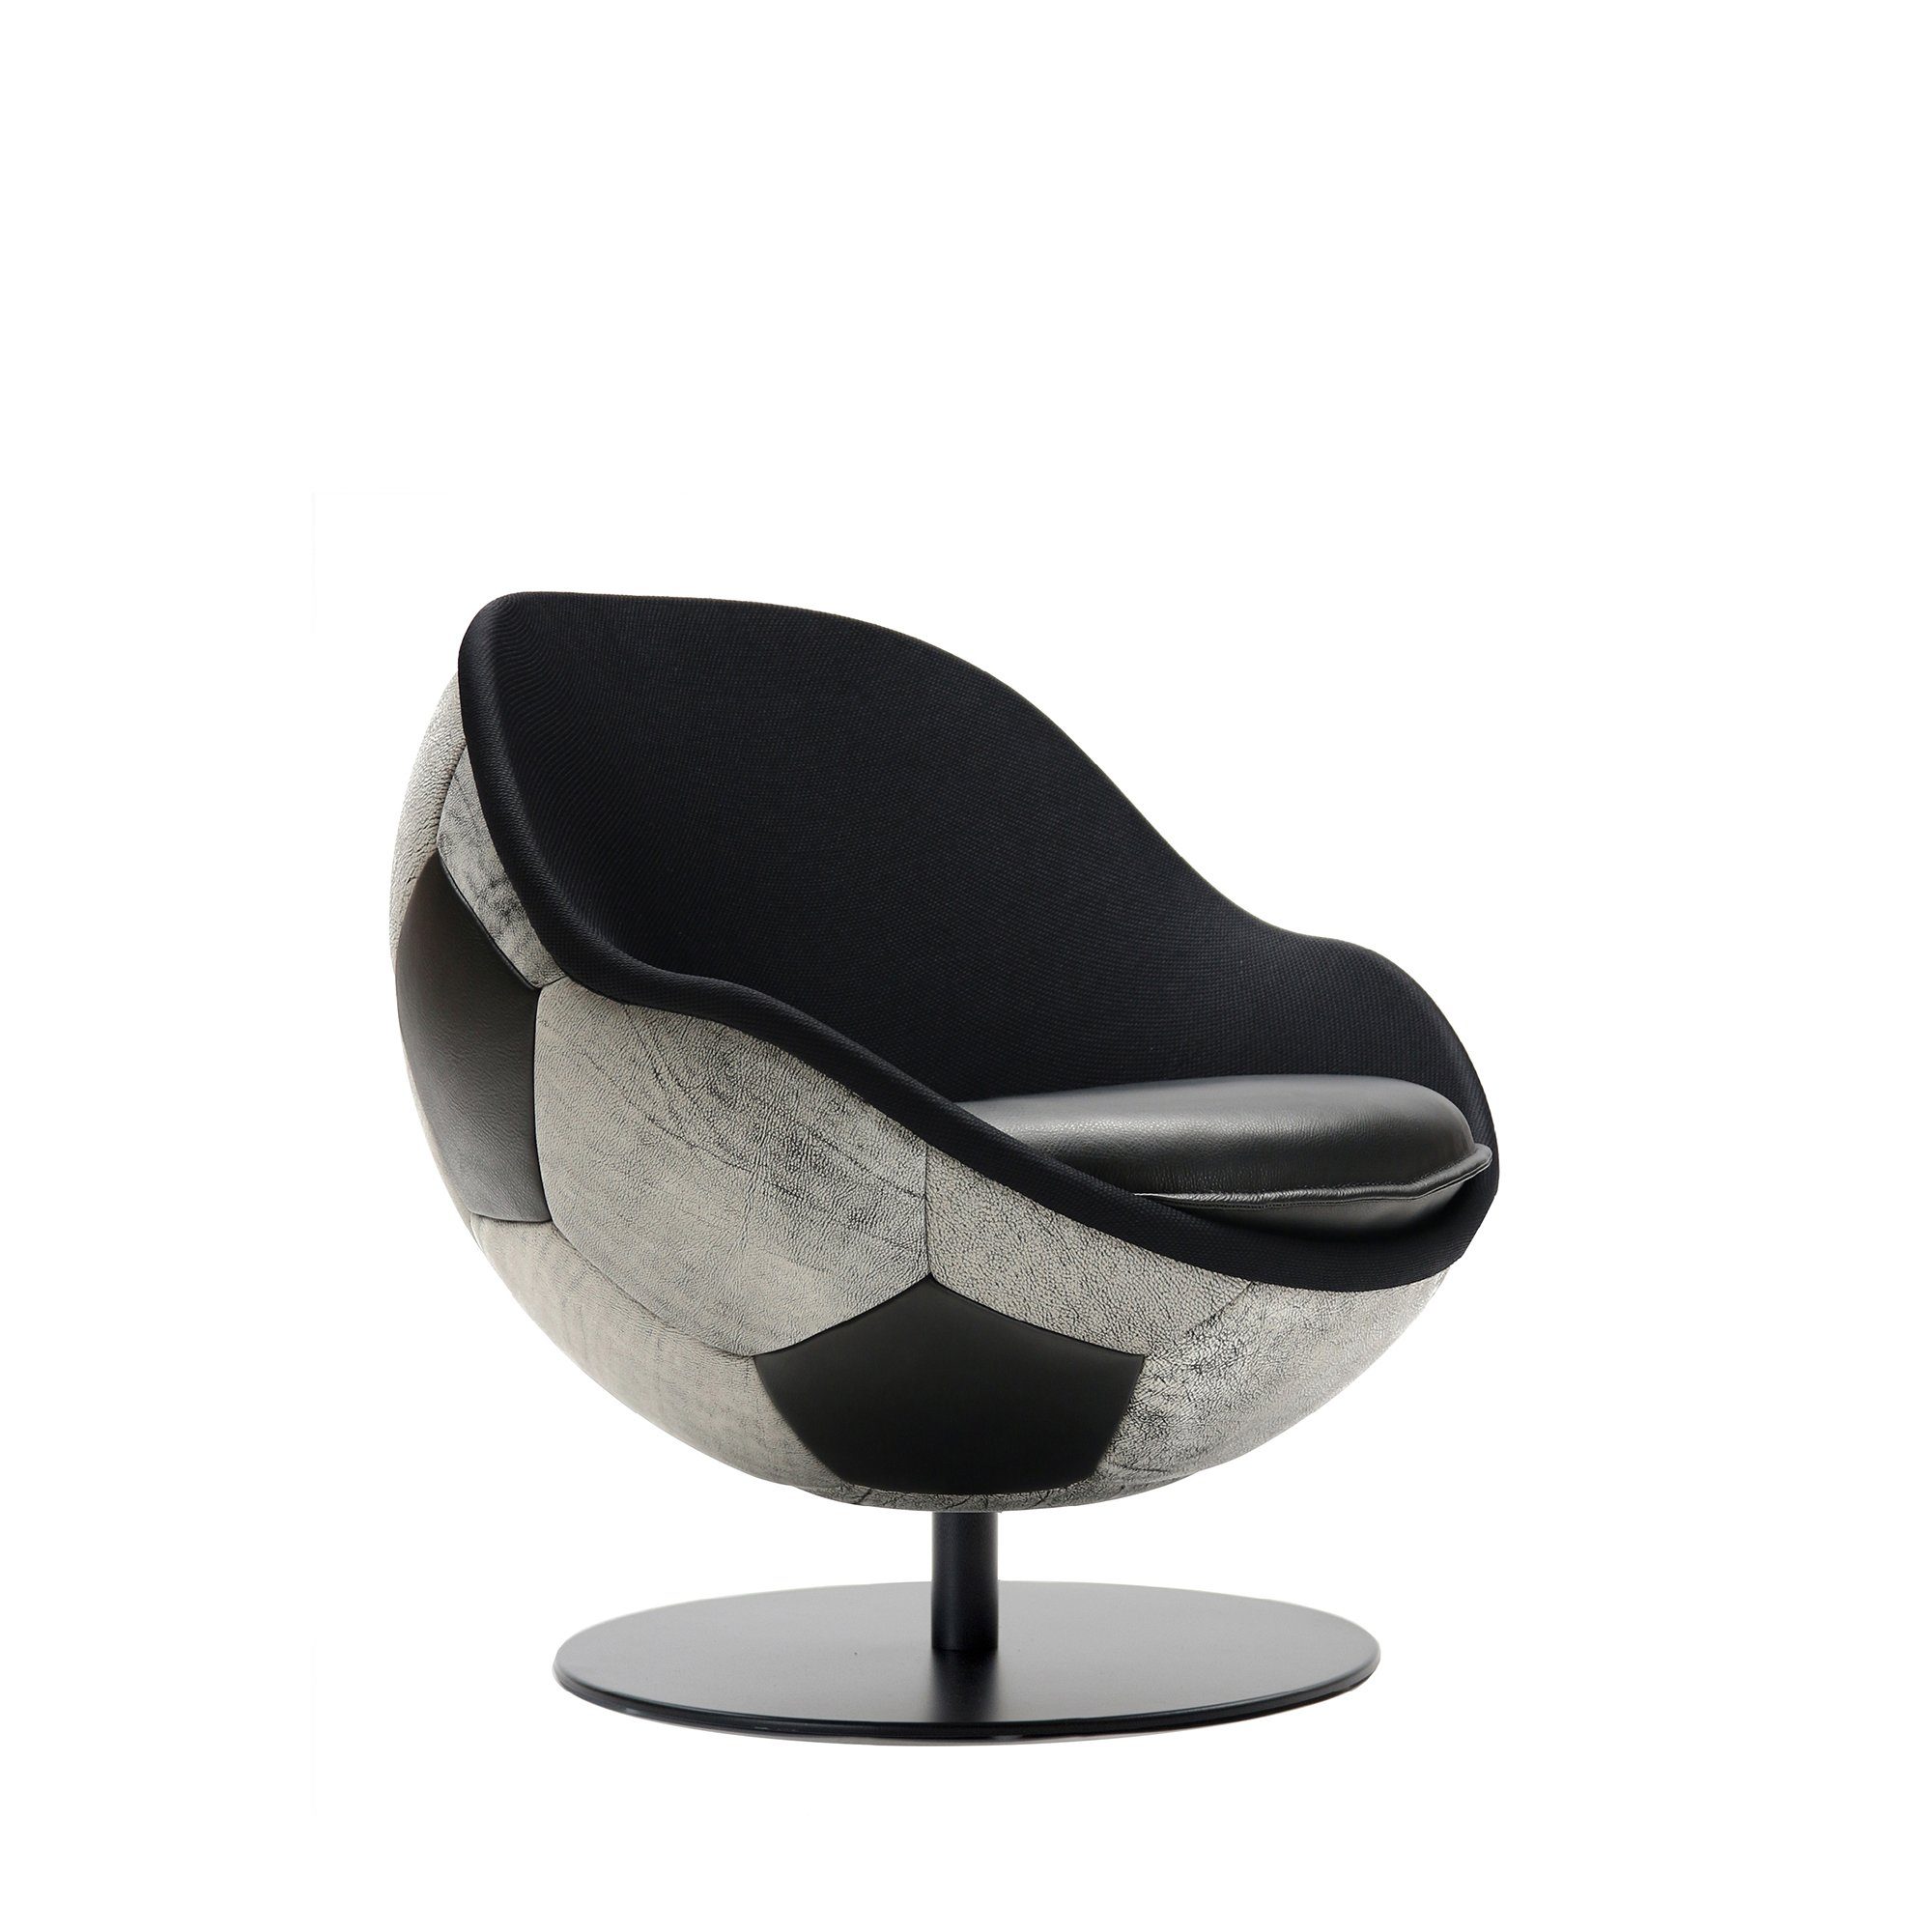 lillus Loungesessel HANDARBEIT, | GERMANY, LIEBEVOLLE MADE schwarz-weiß IN Sessel, Textilleder-schwarz EINZIGARTIG HATTRICK Vintage INDIVIDUALISIERBAR, Fussball